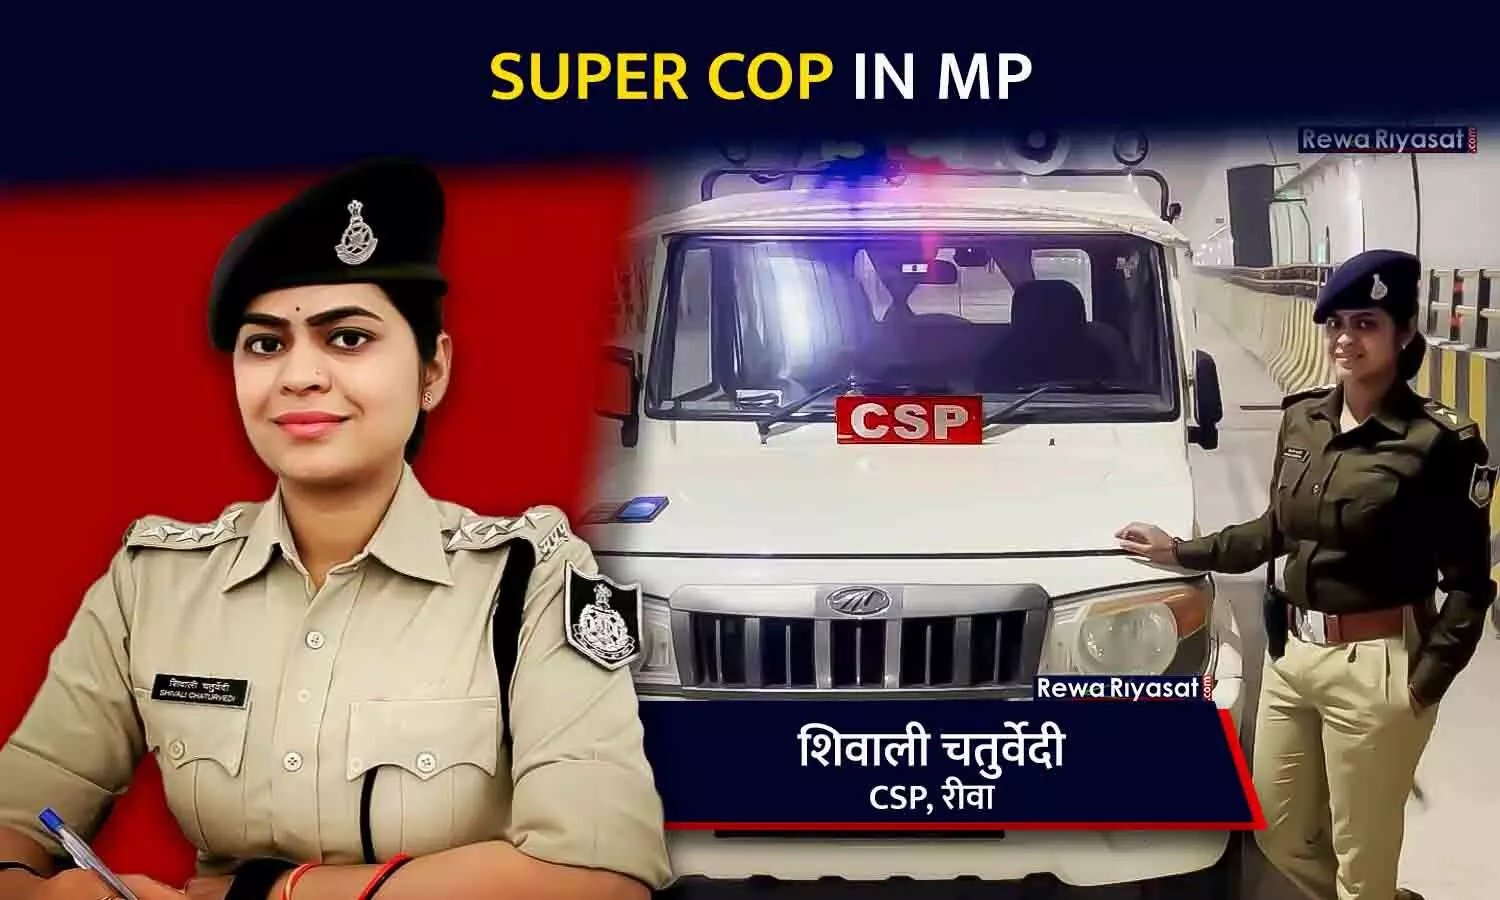 Super Cop In MP: मिलिए रीवा की तेज तर्रार CSP Shivali Chaturvedi से, जानिए कैसा रहा गांव की गलियों से निकलकर पुलिस अफसर बनने का सफर